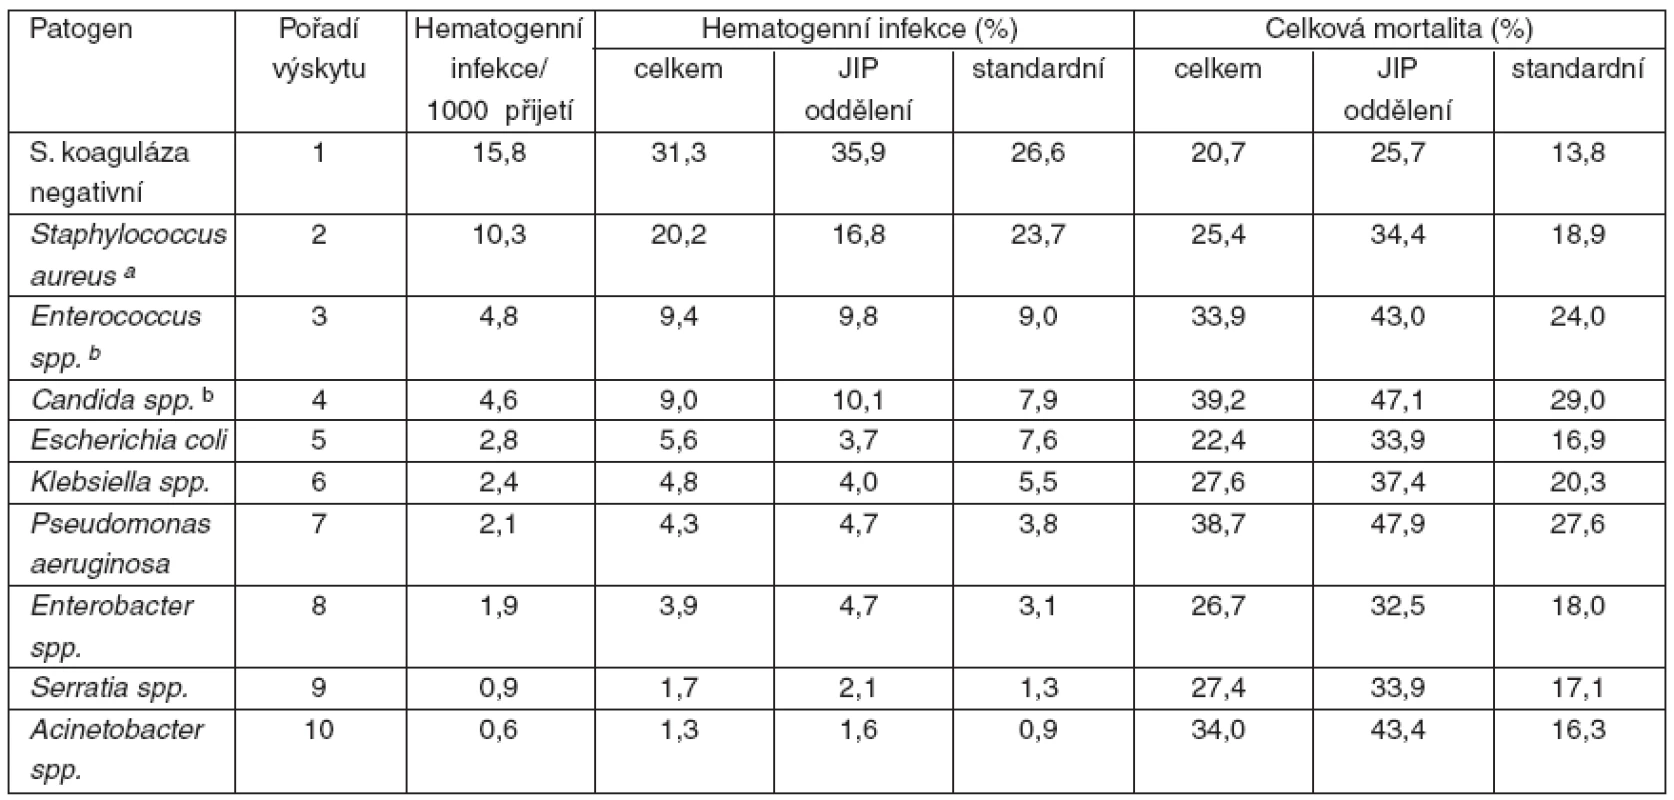 Incidence kauzálních agens hematogenních infekcí, mortalita podle [9]